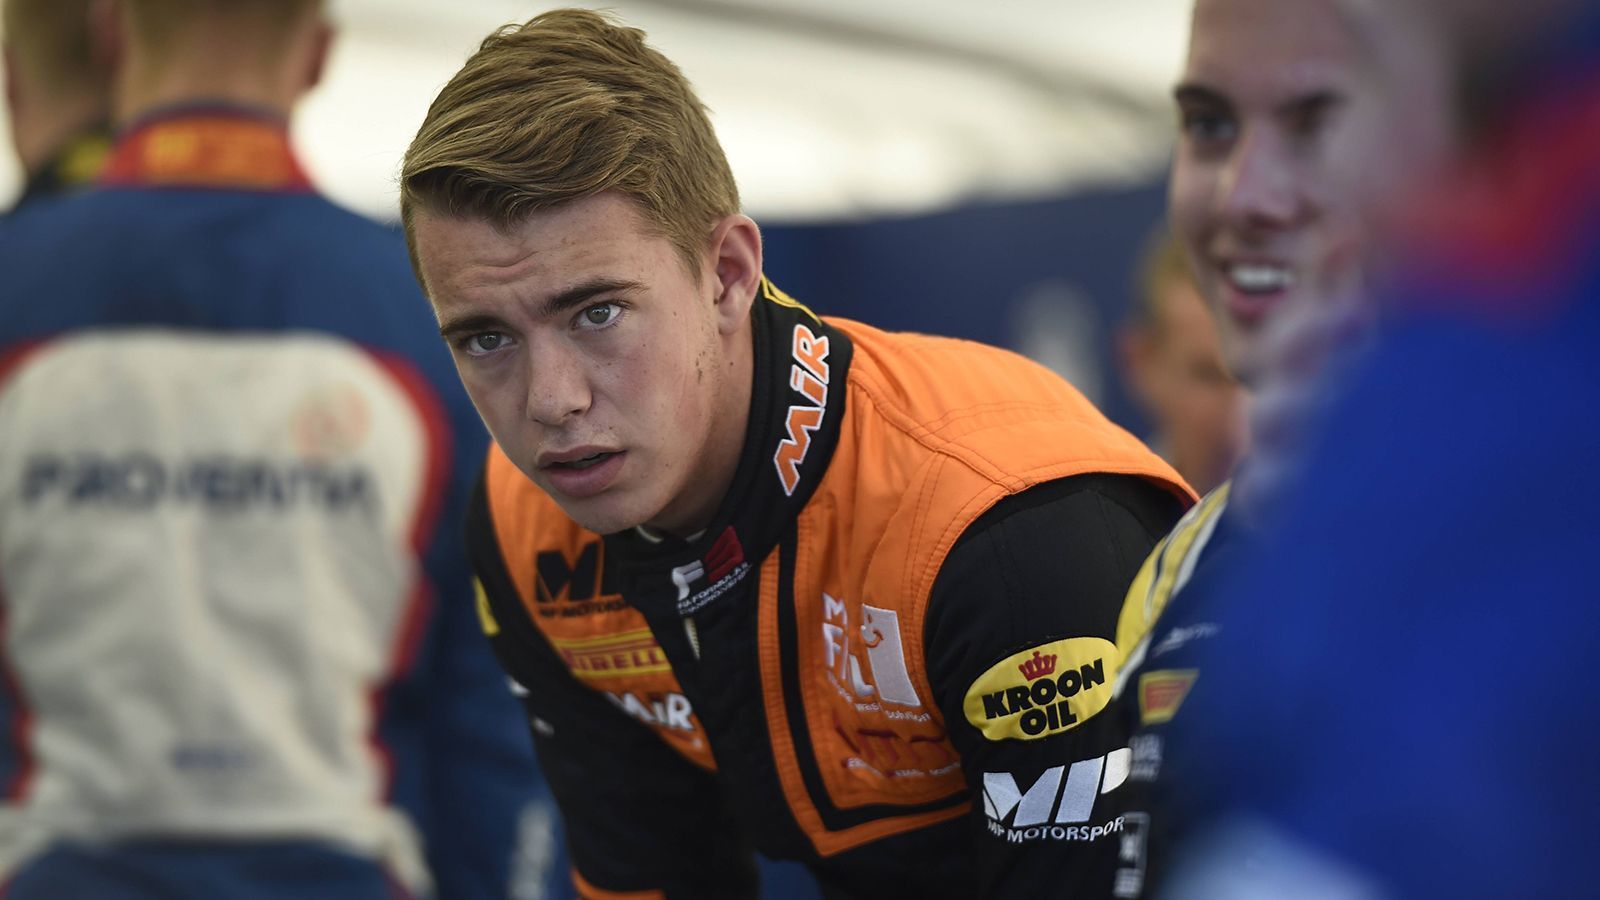 
                <strong>Richard Verschoor (MP Motorsport)</strong><br>
                Der 19-Jährige schaffte es bereits ins Juniorteam von Red Bull. 2016 holte er sowohl in der SMP Formel 4 als auch in der spanischen Formel 4 den Gesamtsieg. Es folgten durchwachsene Jahre, dann aber der Sieg beim Macau-Rennen im letzten Jahr. Der Niederländer steht mit einem Podiumsplatz bisher auf Rang 5 der Gesamtwertung der Formel 3.
              